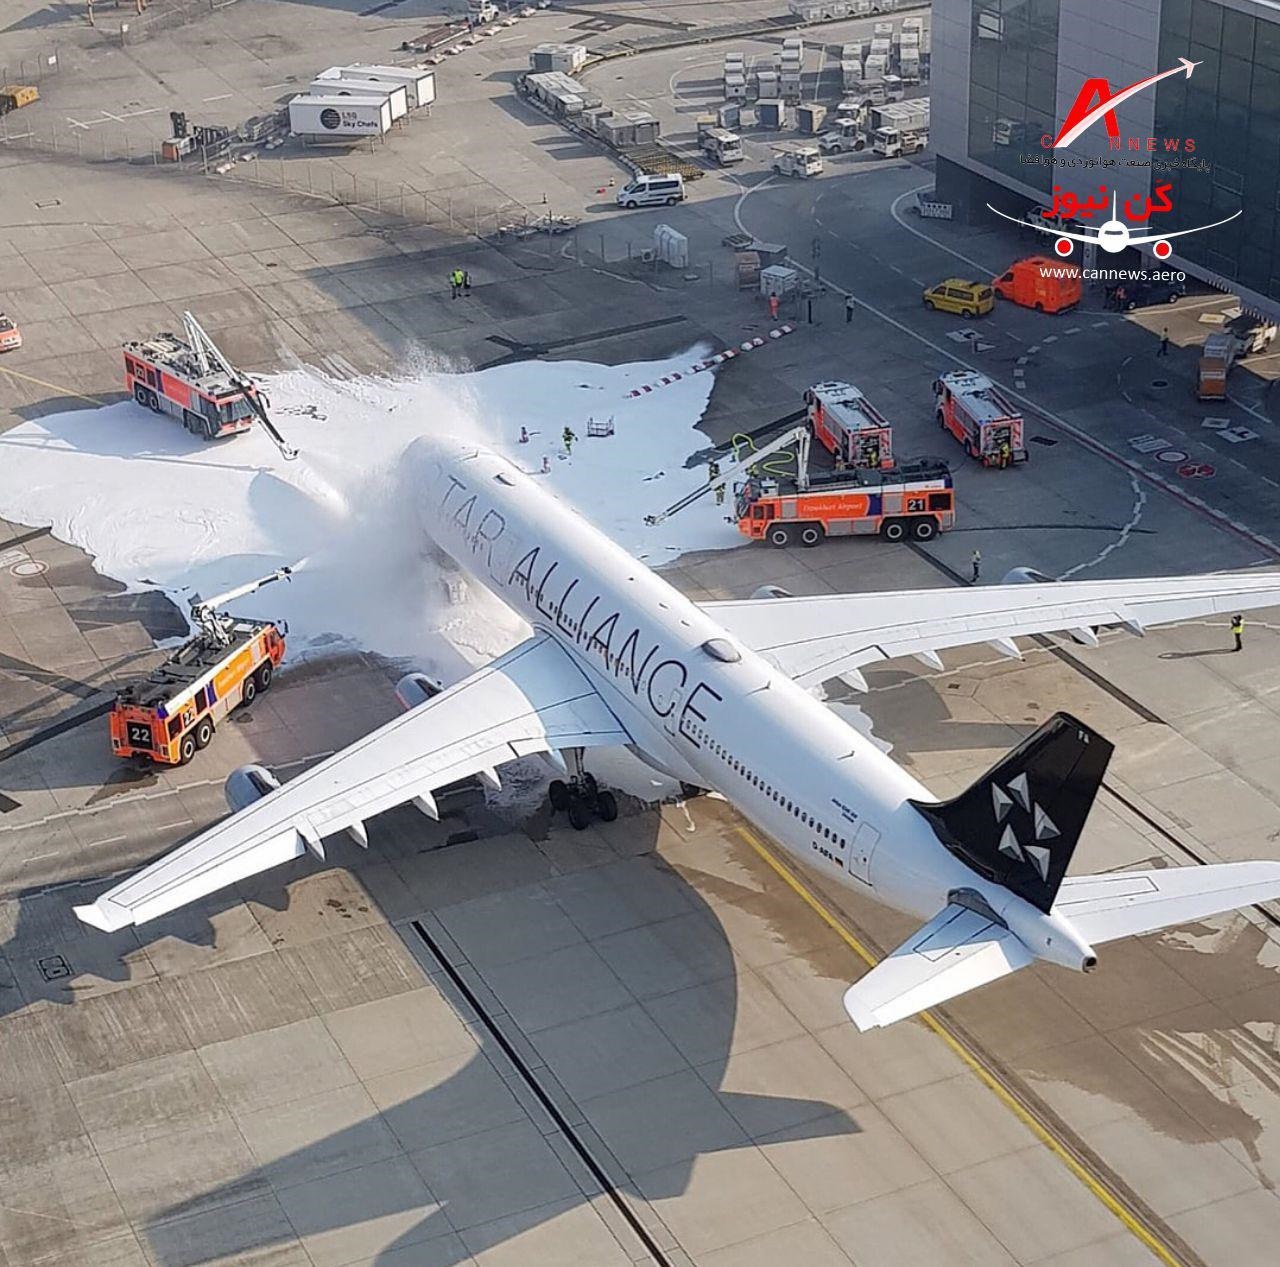 فیلم و عکس | آتش گرفتن هواپیمای ایرباس در فرودگاه فرانکفورت